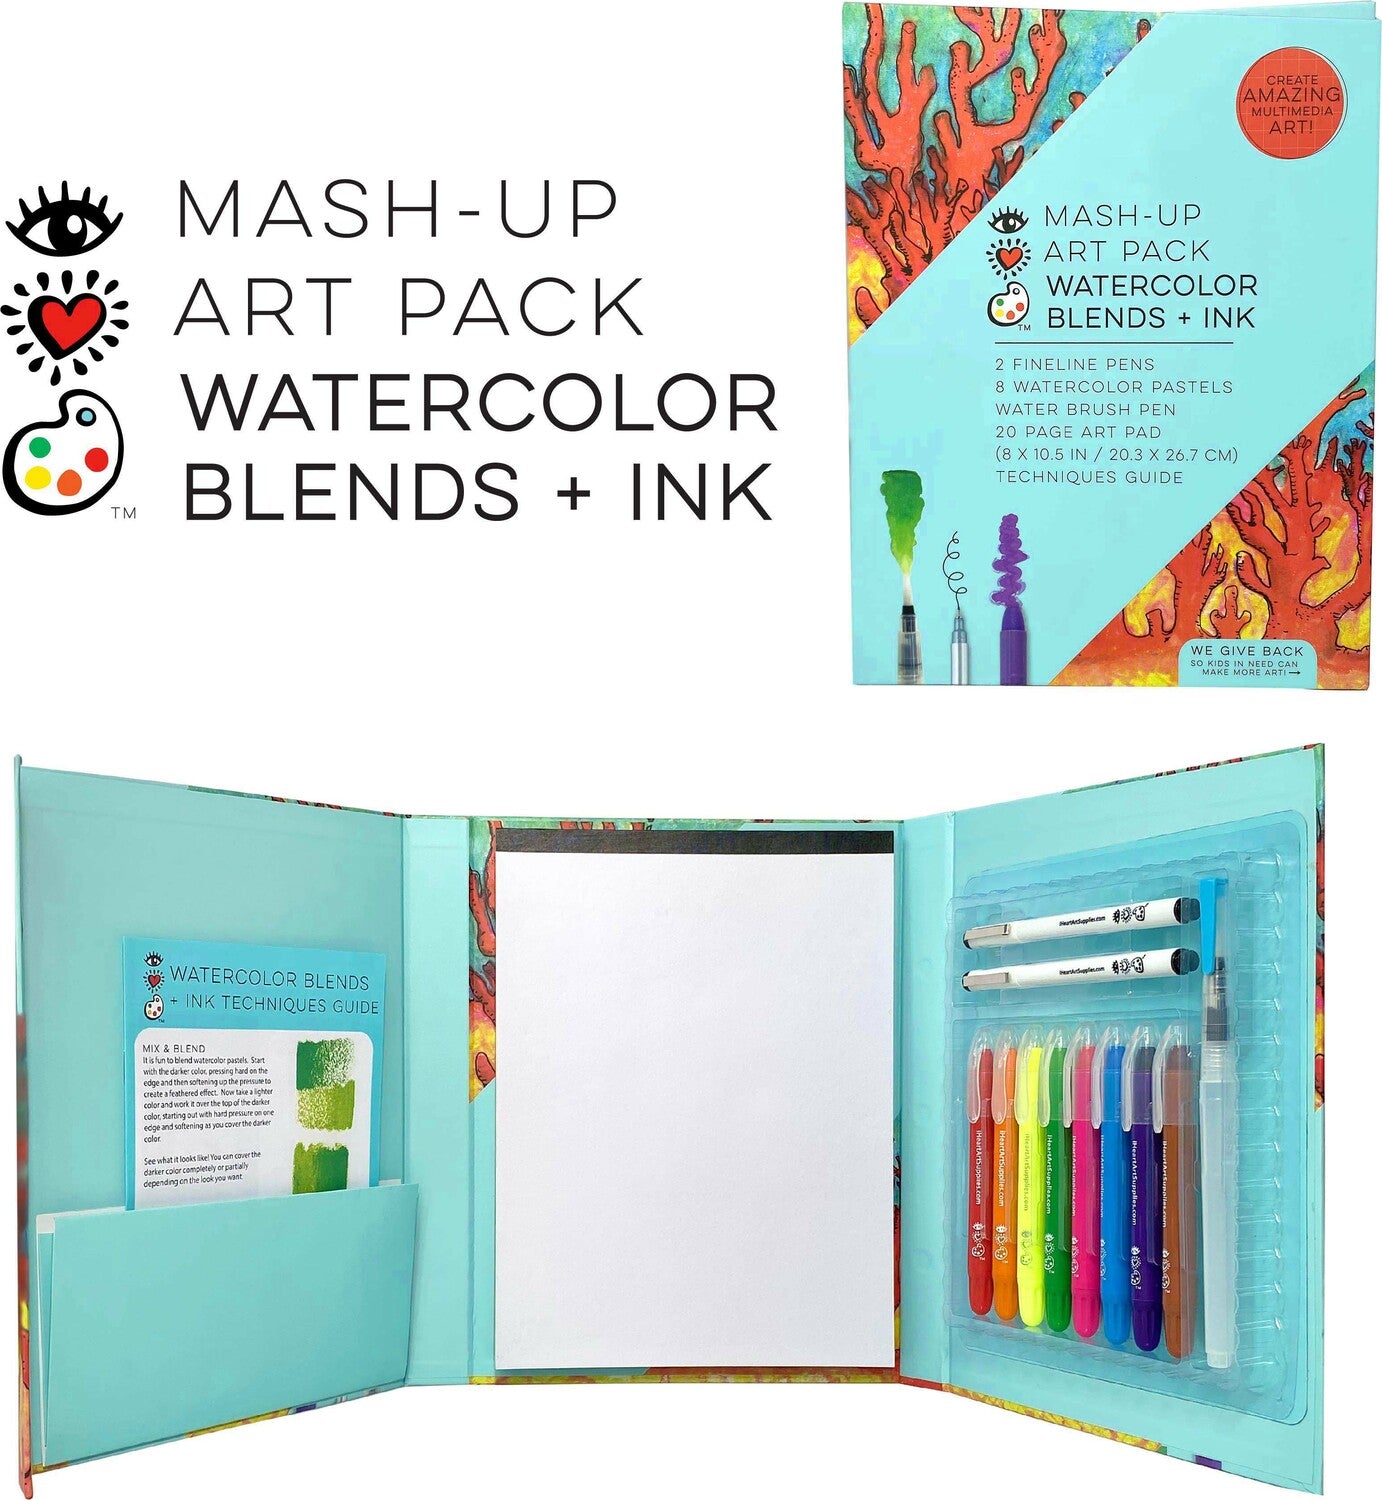 Iheartart Mash-up Art Pack Watercolor Blends  Ink Total Art Set